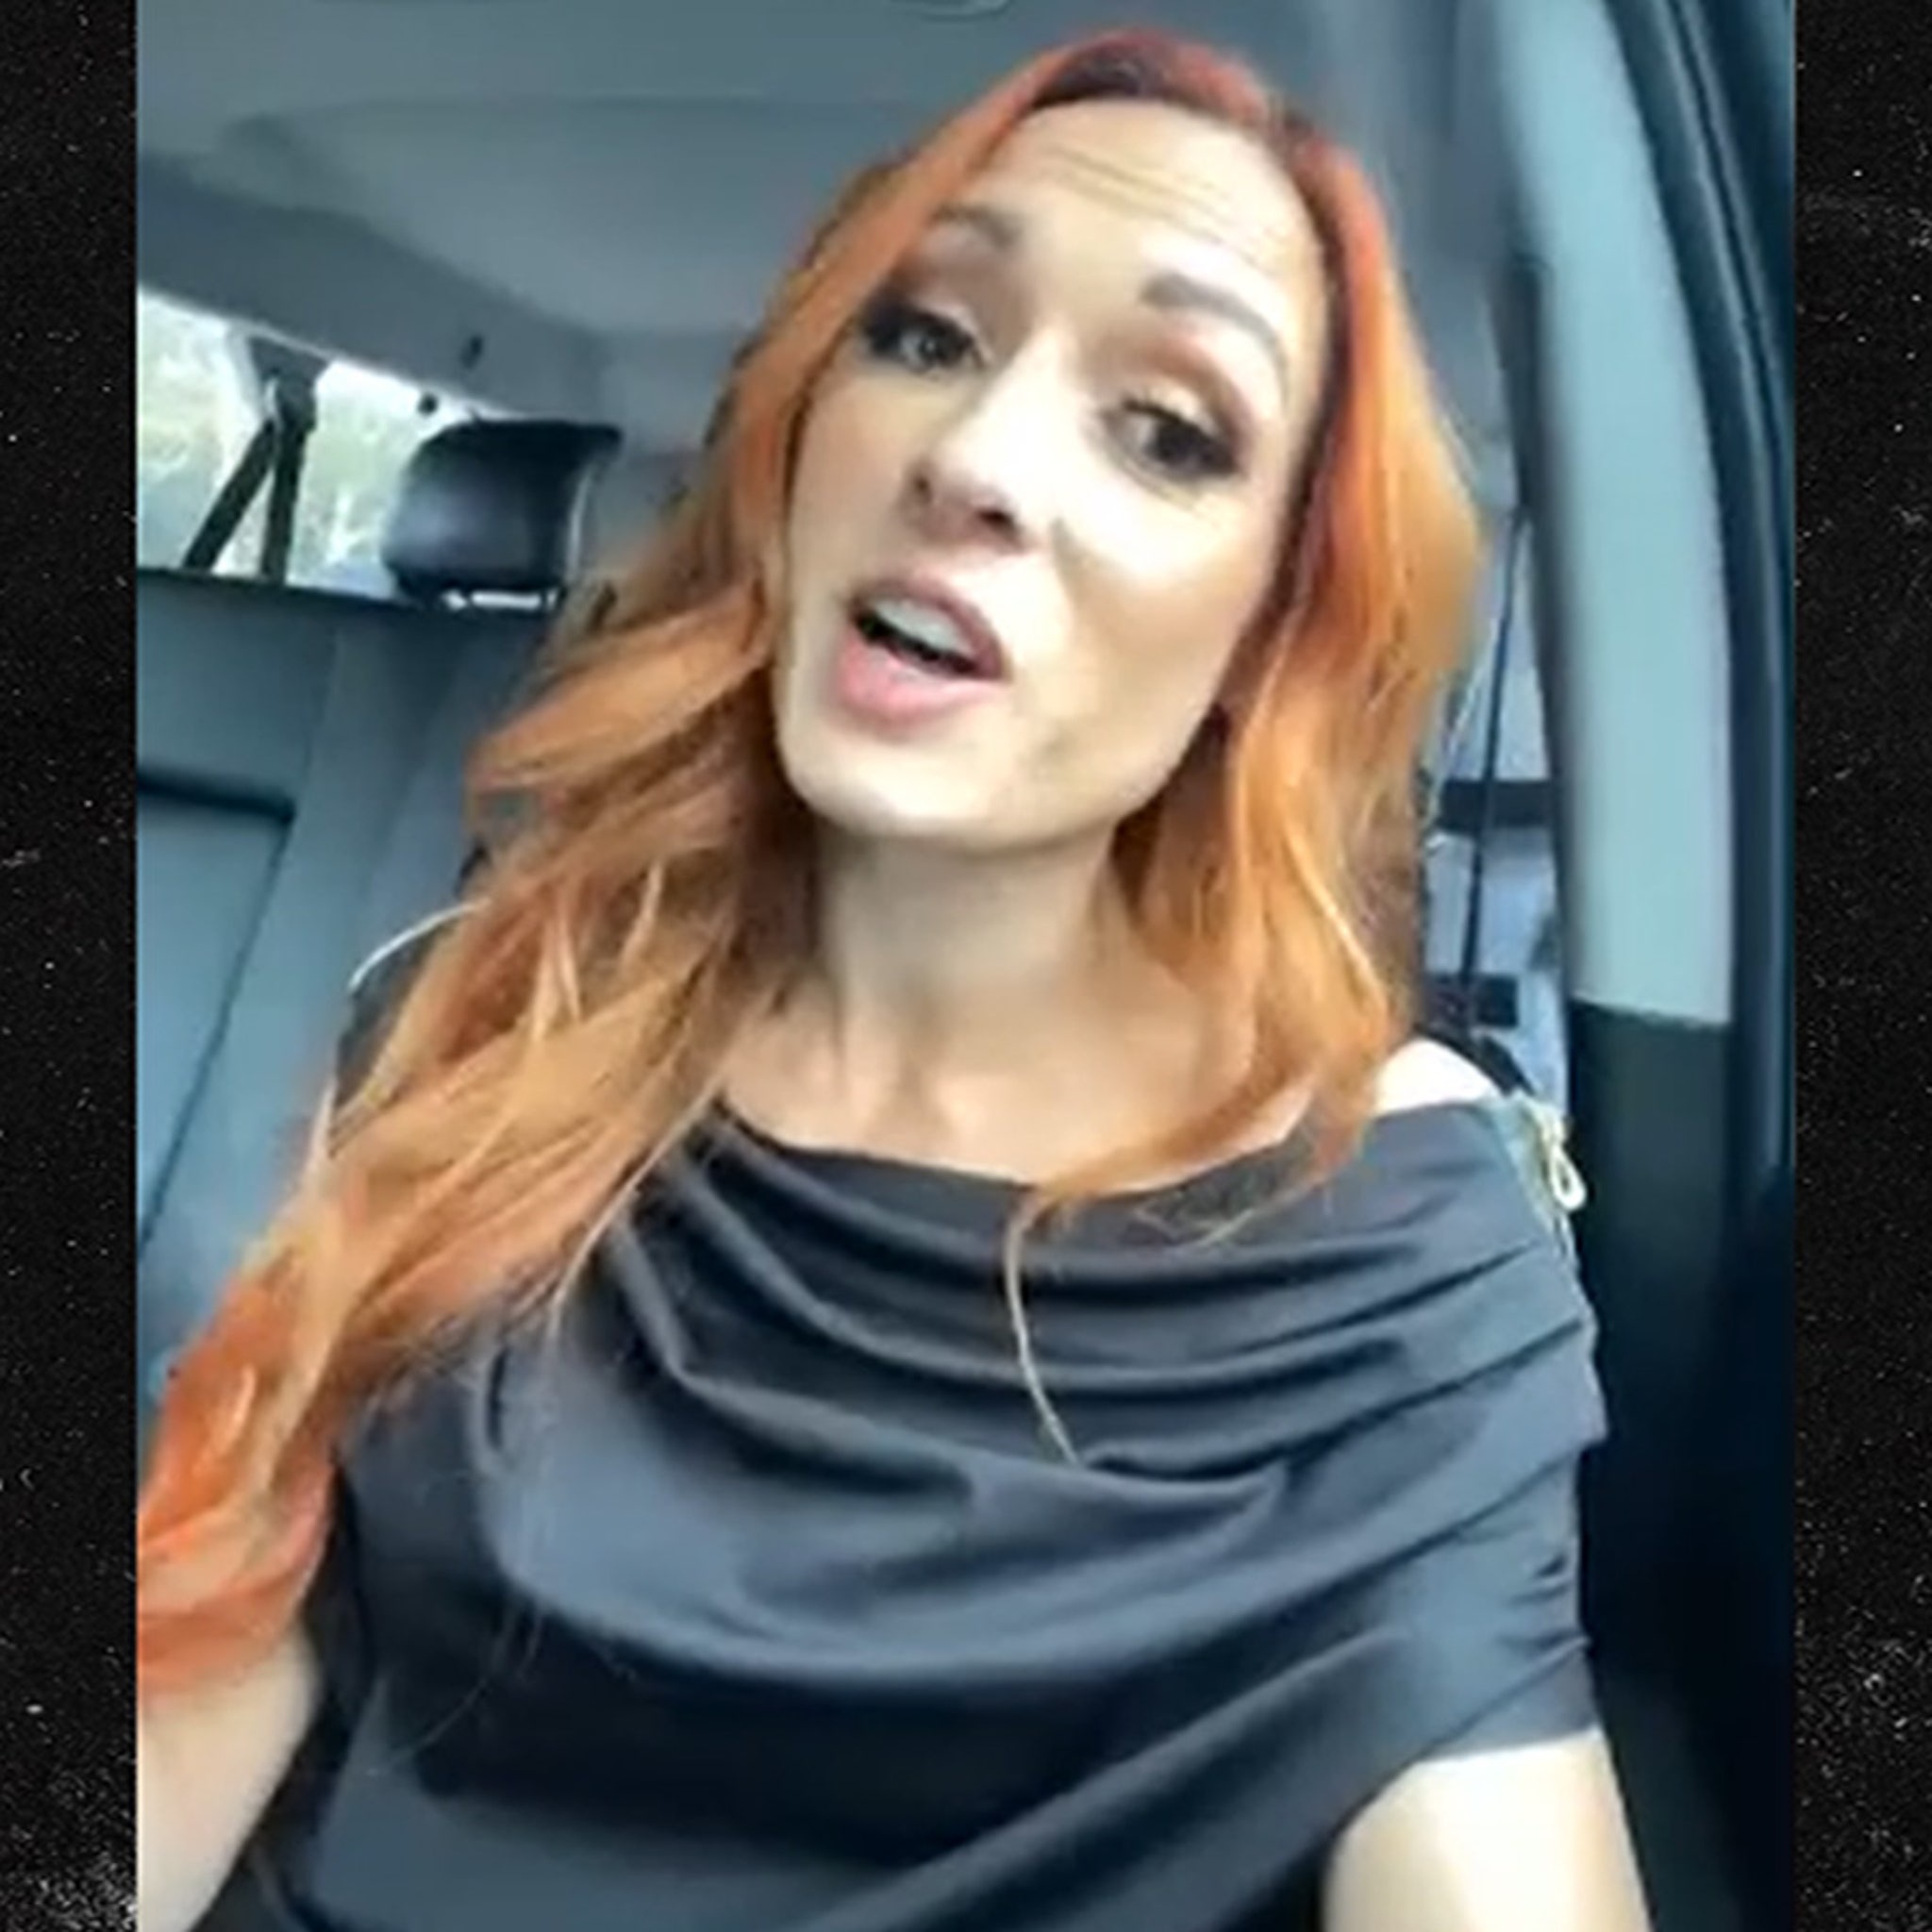 WWE's Becky Lynch funny dilemma - Instagram Live moment, WWE's Becky Lynch  funny dilemma - Instagram Live moment, By WWE Instagram & Snapchat